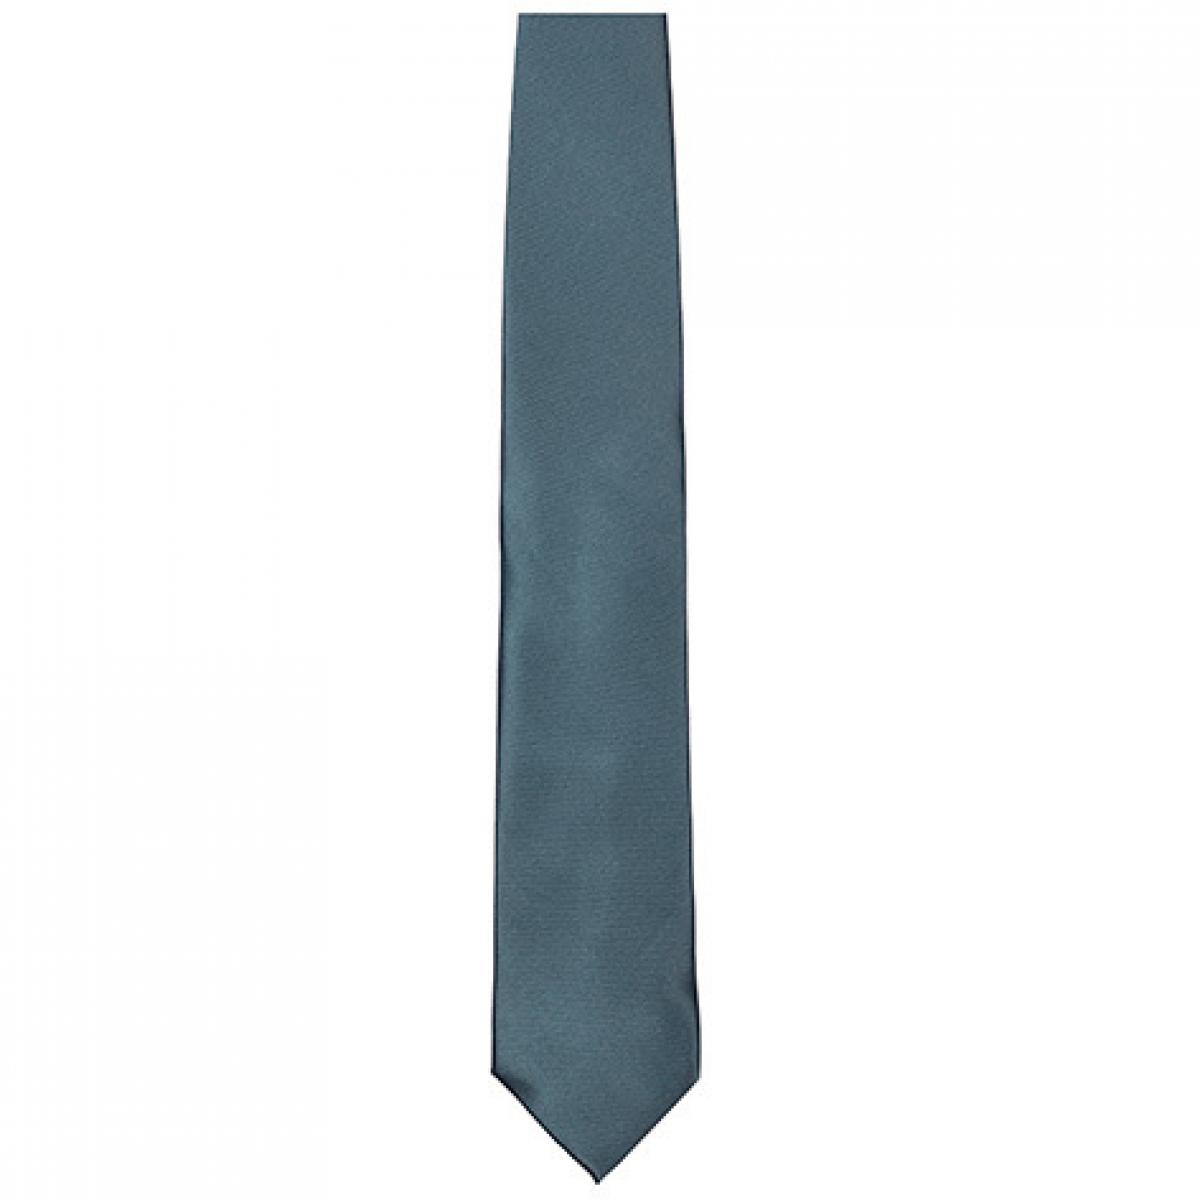 Hersteller: TYTO Herstellernummer: TT901 Artikelbezeichnung: Satin Tie / 144 x 8,5cm /  Zu 100% von Hand genäht Farbe: Grey